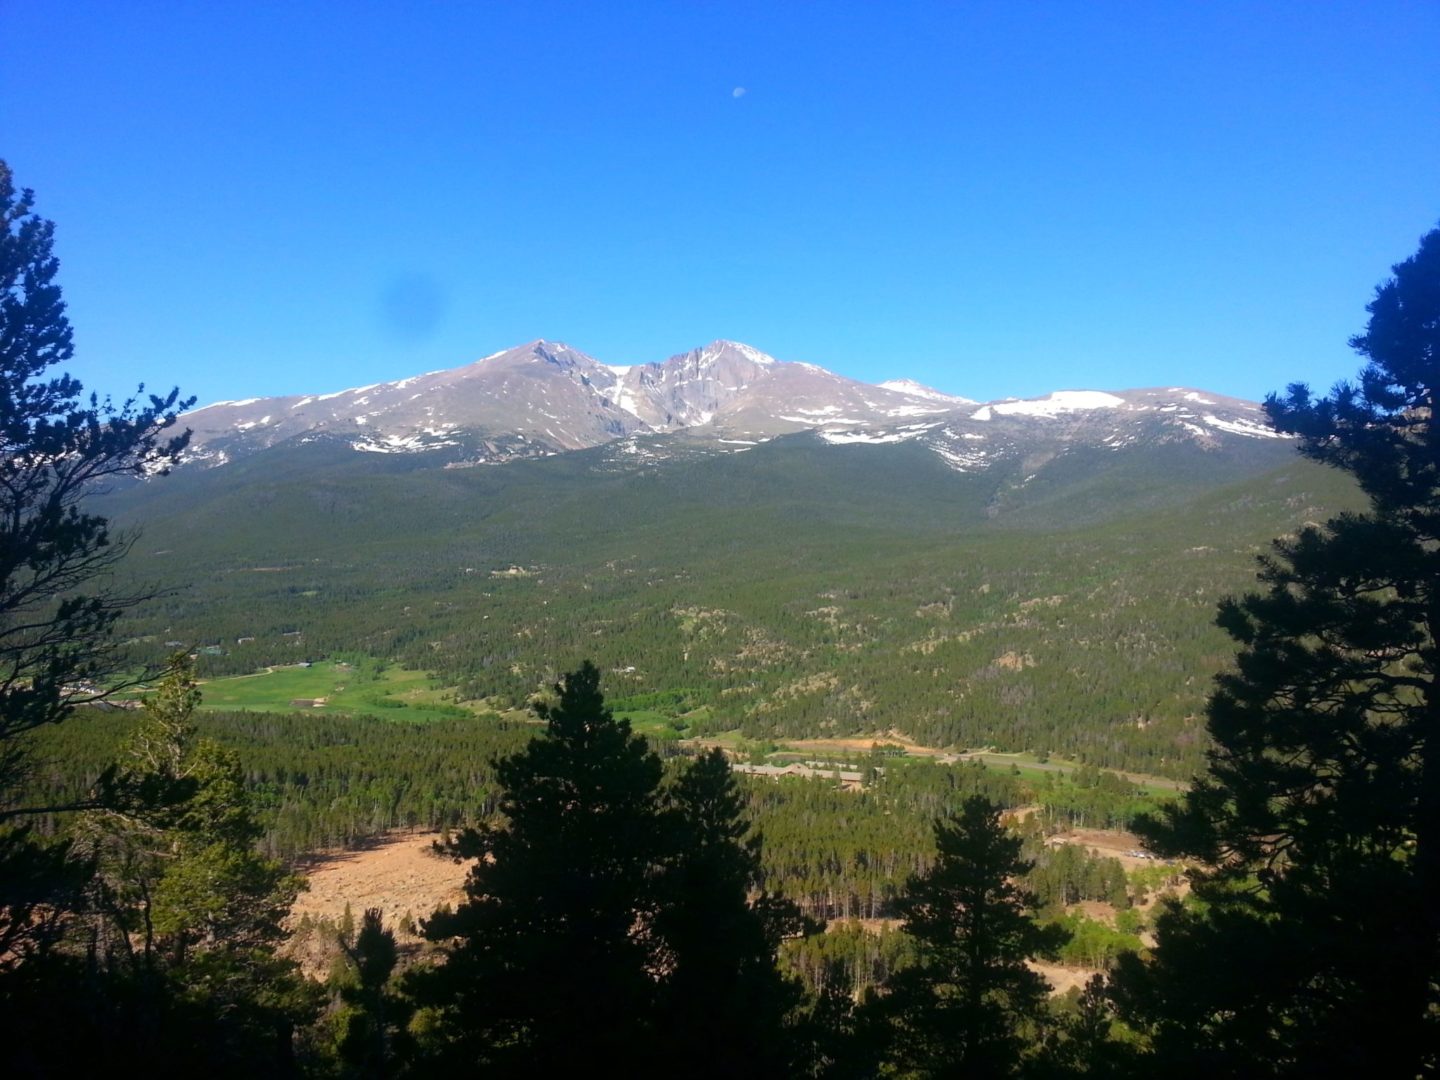 View of Longs Peak and Mt Meeker